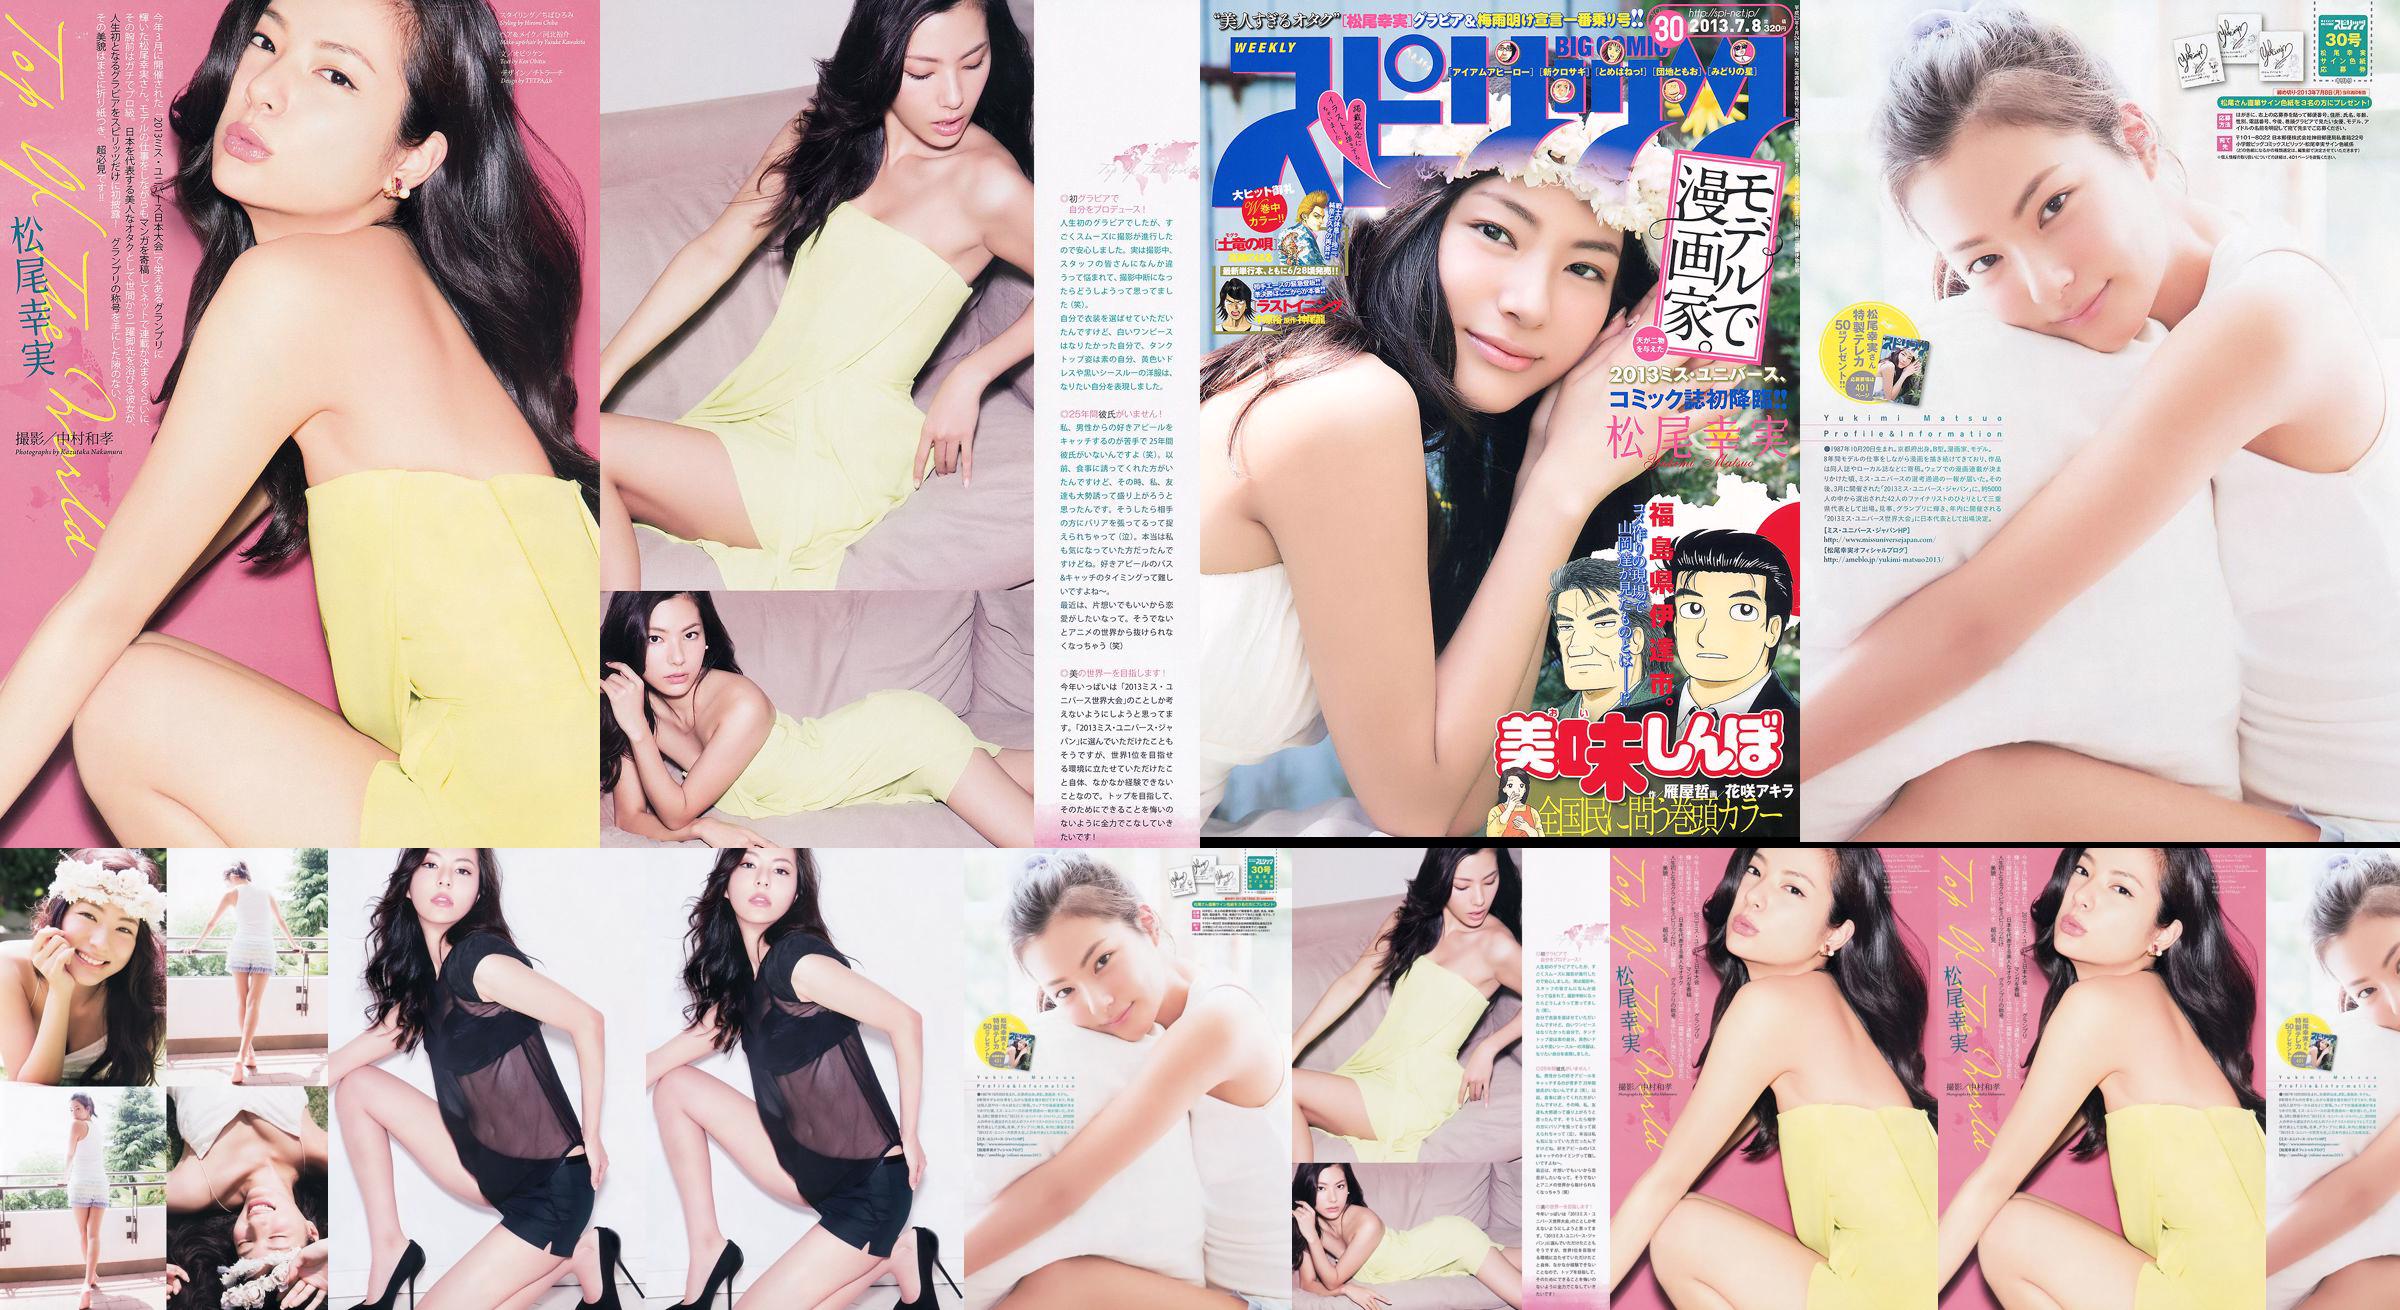 [Weekly Big Comic Spirits] Komi Matsuo 2013 No.30 Photo Magazine No.0d4e22 Trang 1